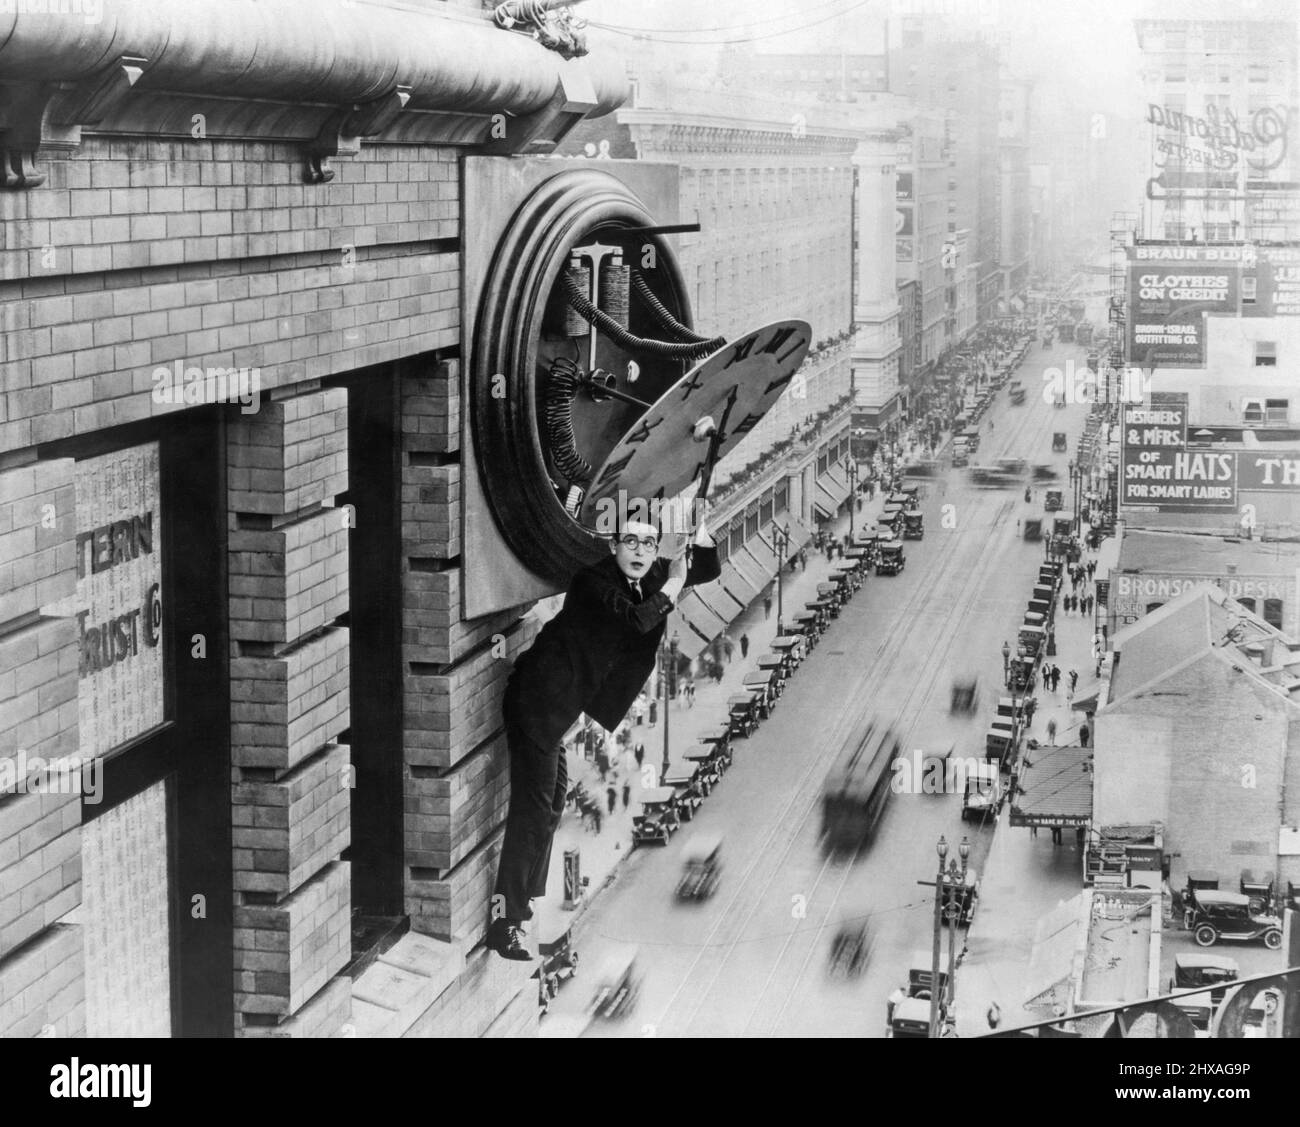 Der Schauspieler Harold Lloyd hängt an einer Bauuhr im amerikanischen Stummfilm Safety Last! Aus dem Jahr 1923. Stockfoto